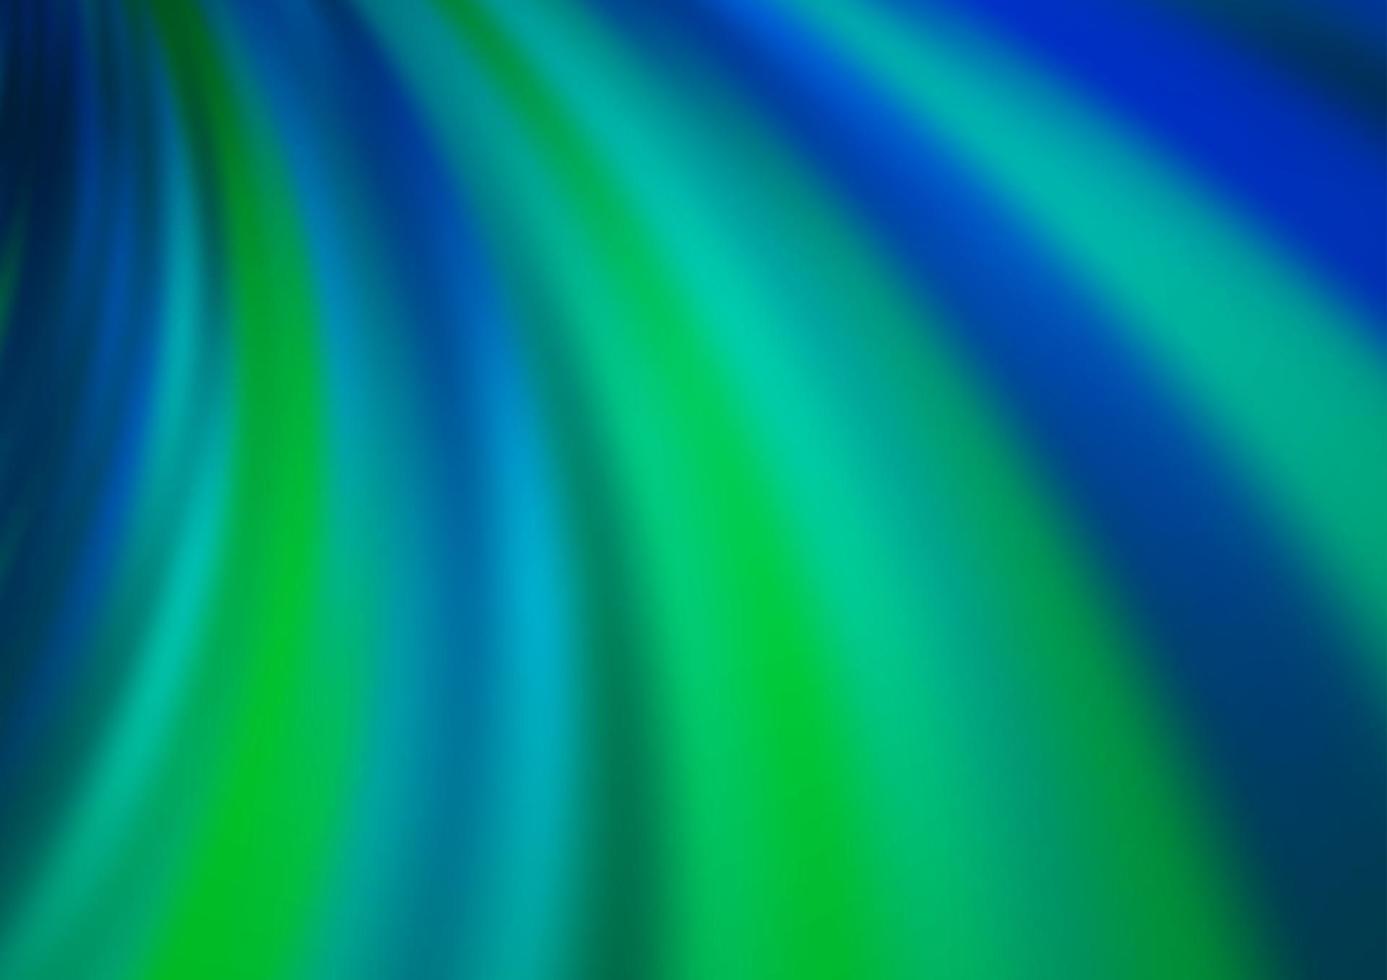 ljusblå, grön vektorbakgrund med böjda linjer. vektor